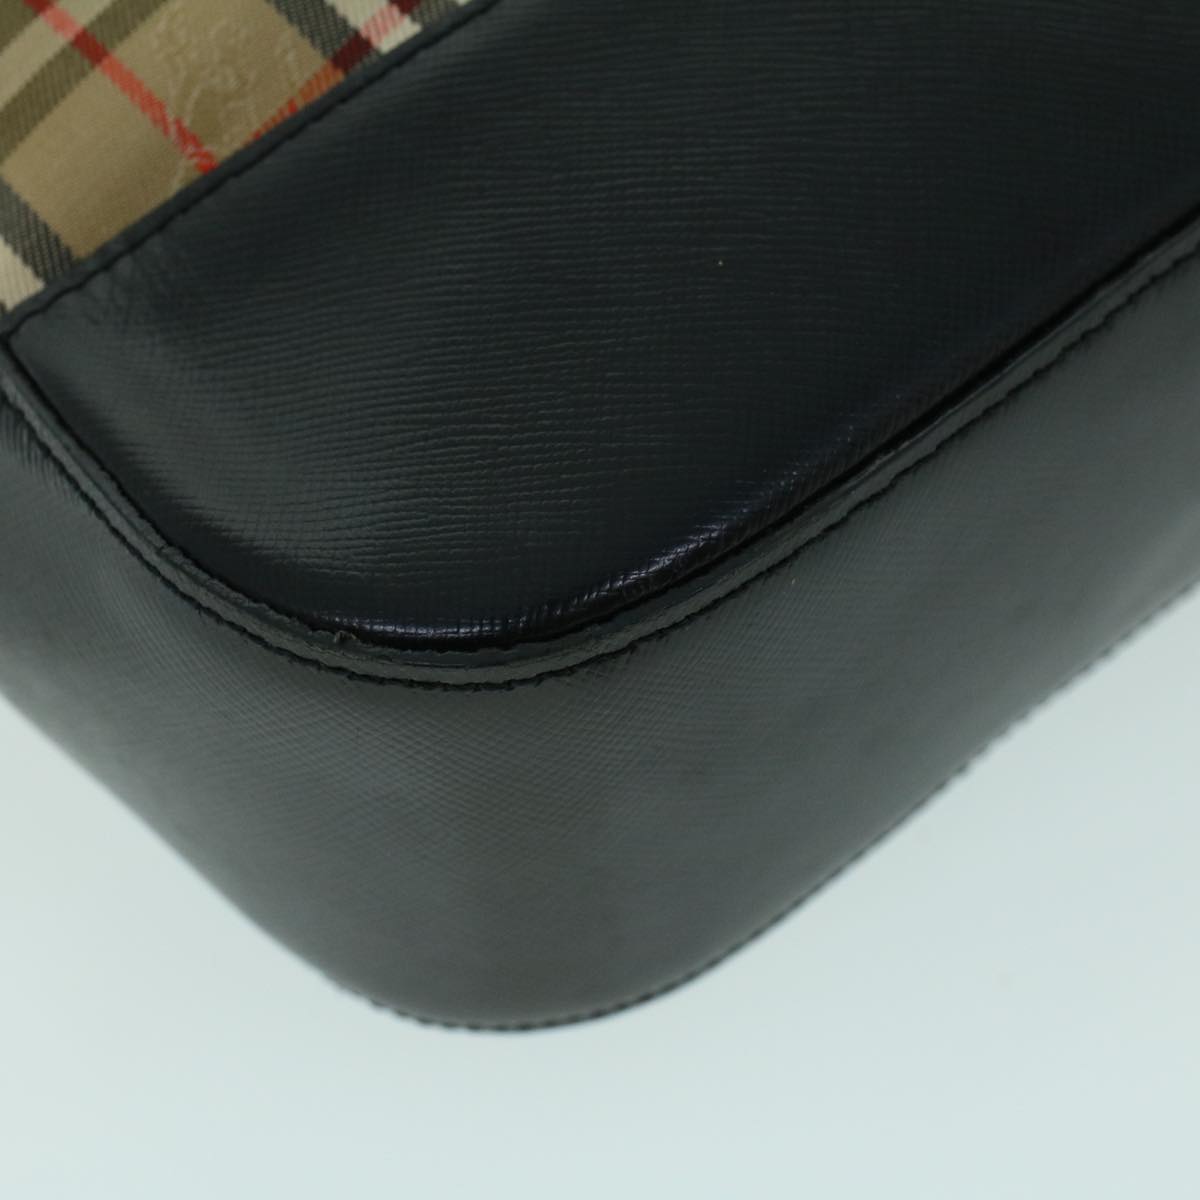 Burberrys Nova Check Shoulder Bag Canvas Leather Beige Black Auth 53788